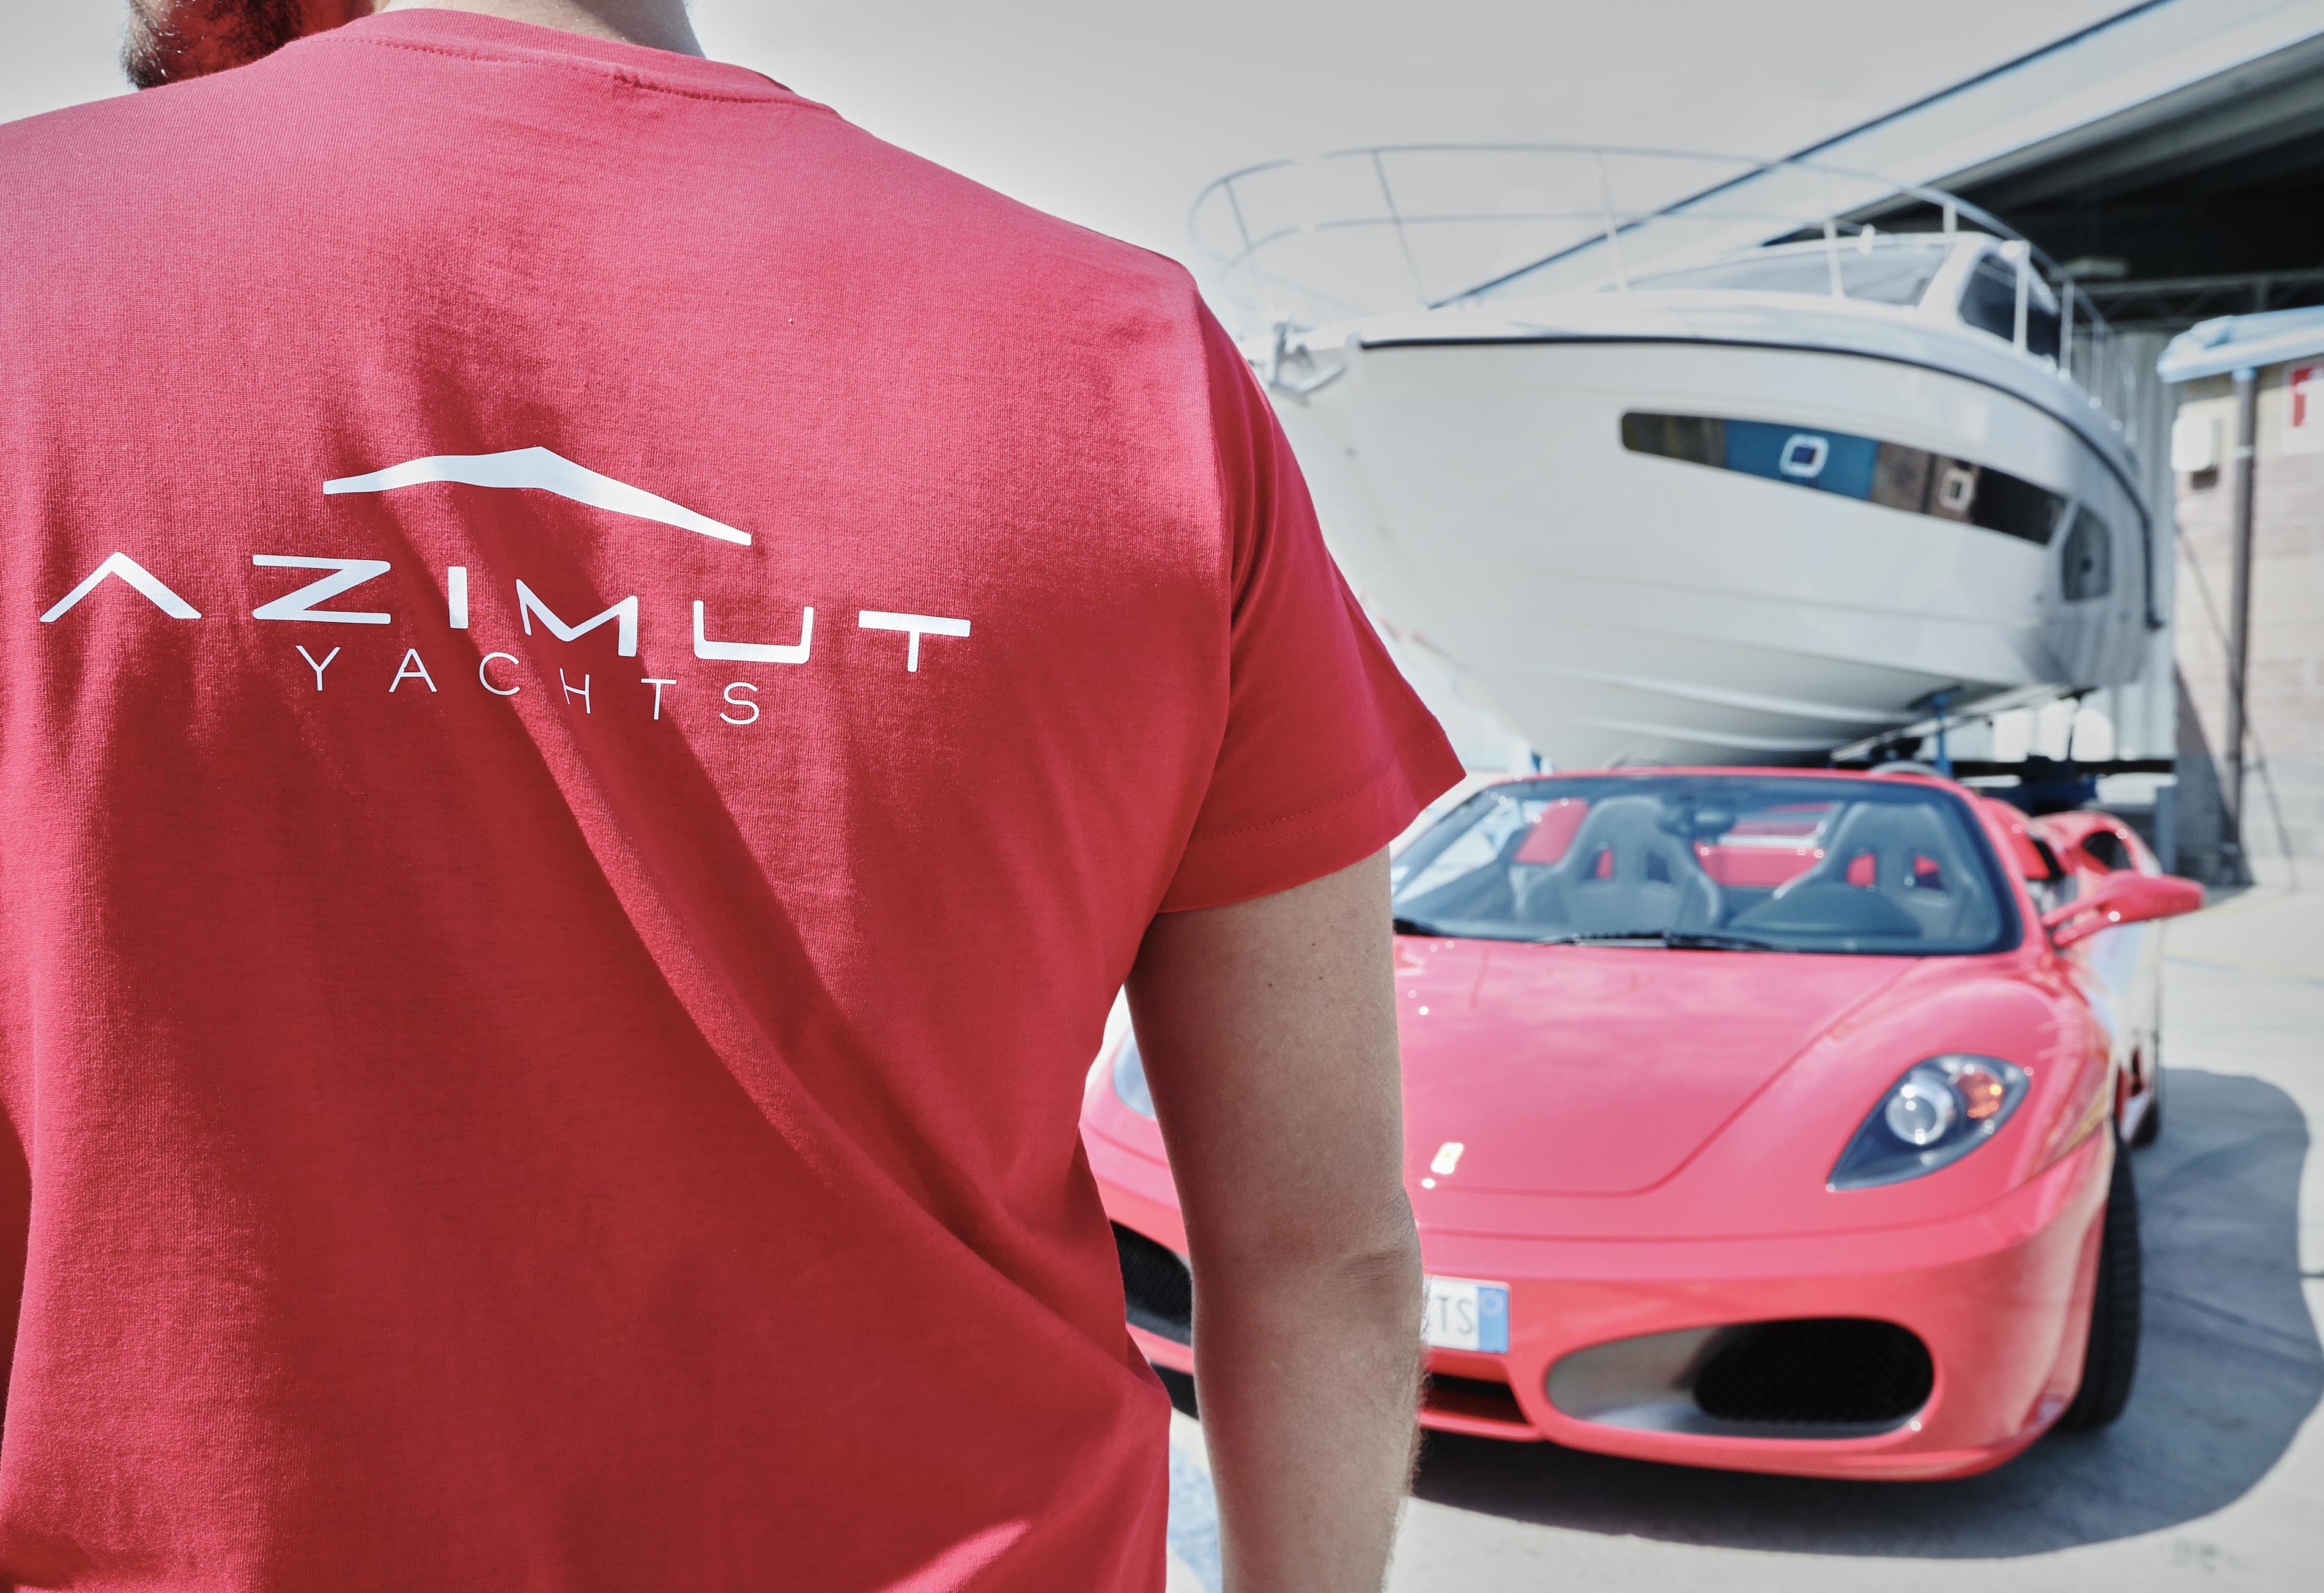 Le Ferrari in mostra allo stabilimento Azimut|Benetti di Avigliana - Economia del mare (Comunicati Stampa)